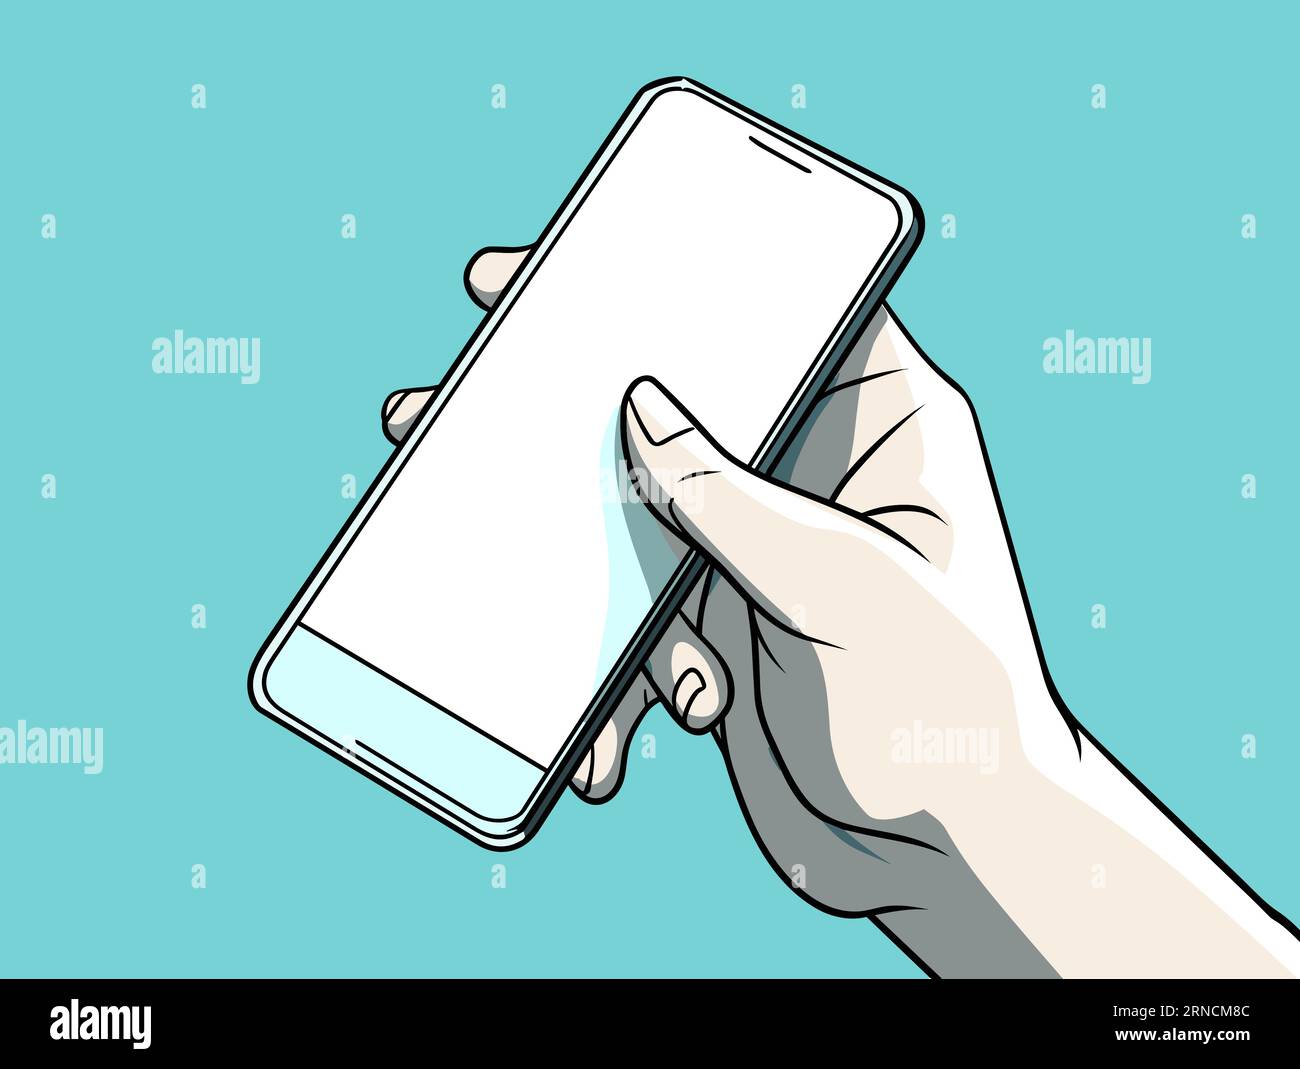 Eine Person, die Ein Smartphone mit Einem leeren Bildschirm hochhält, im Stil des Vintage Comic-Stils, Himmelblau und Schwarz, glatte Oberflächen, feine Linien, empfindliches C Stock Vektor